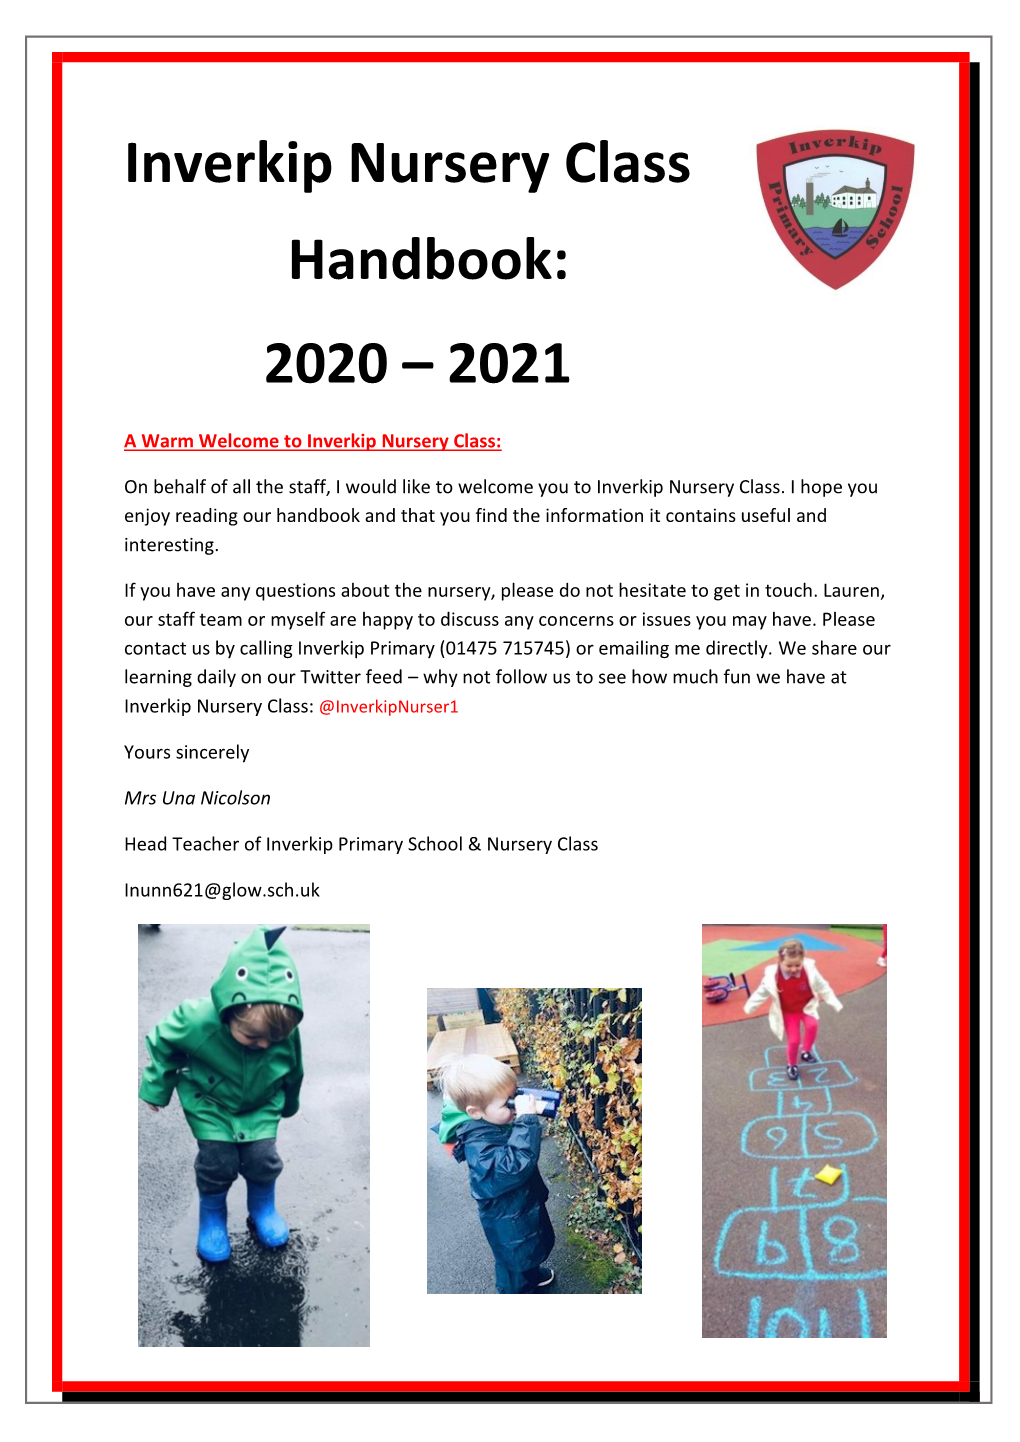 Inverkip Nursery Class Handbook: 2020 – 2021